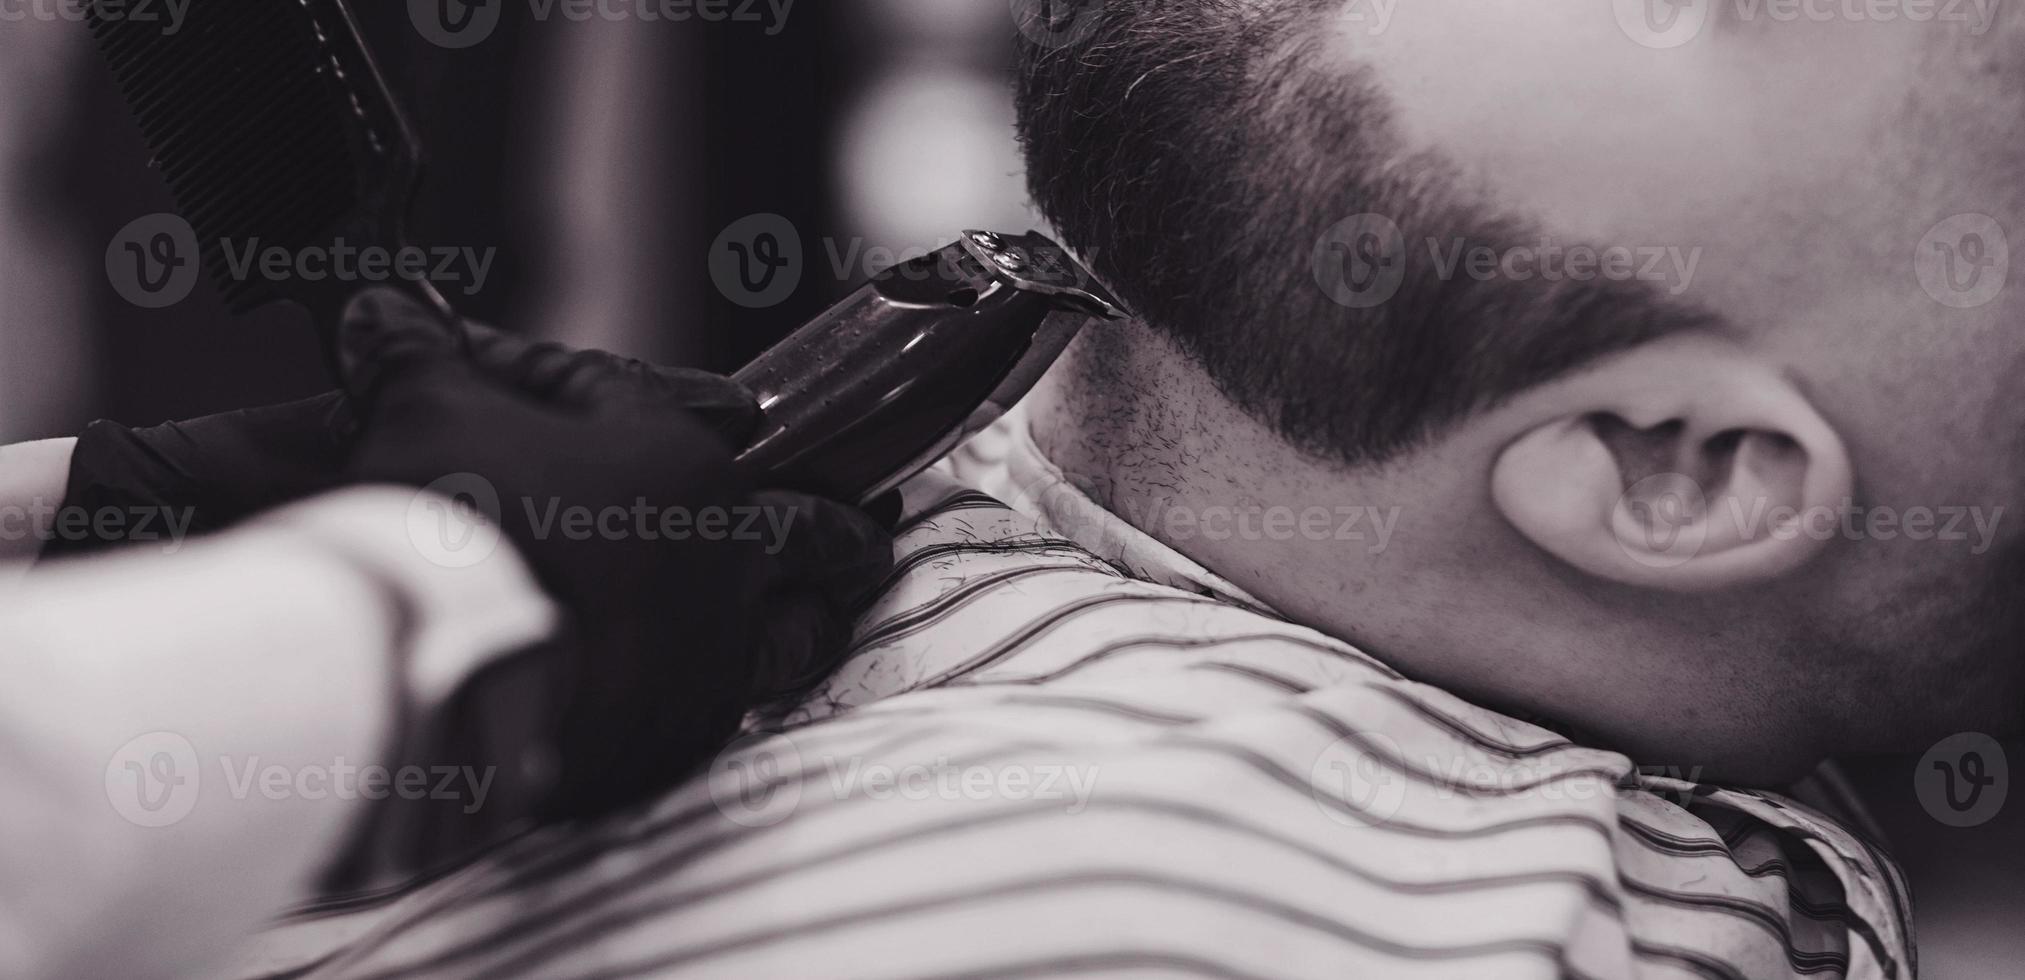 peluquero corta la barba de un hombre foto